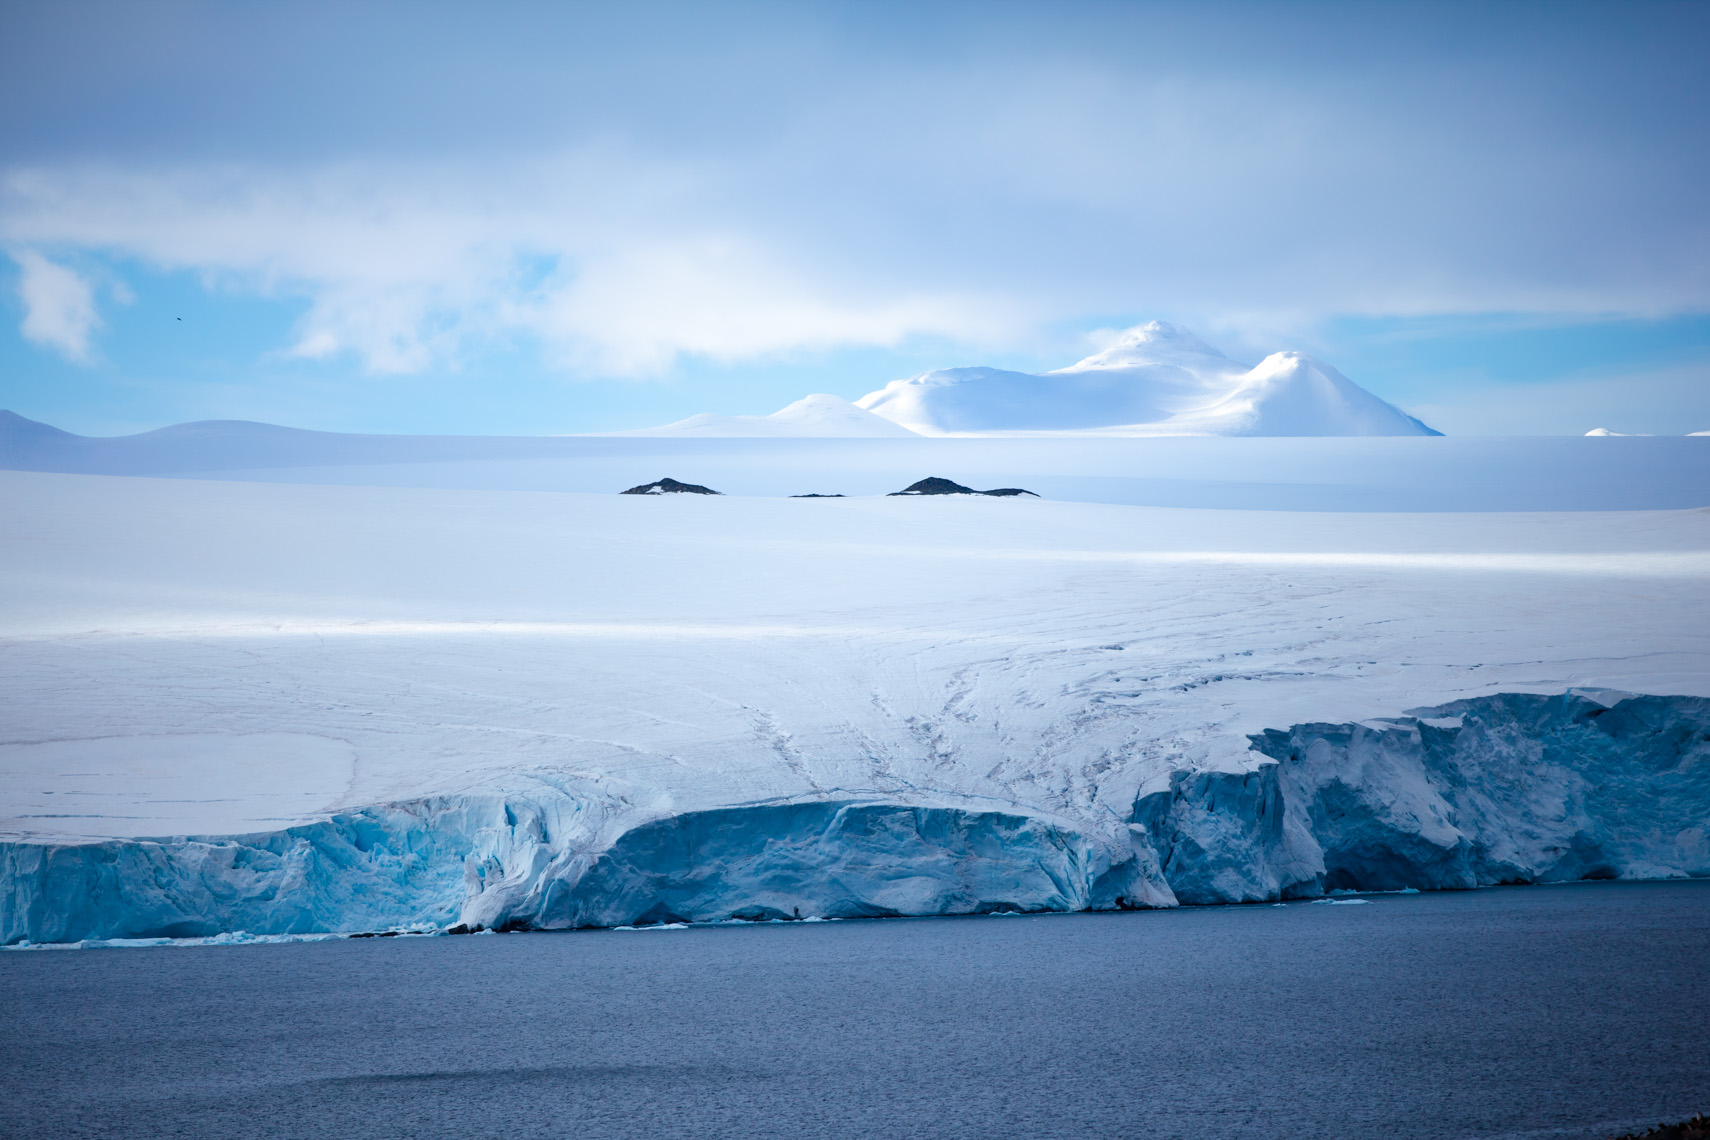 Антарктические полюса. Покровные ледники Антарктиды. Антарктида (материк). Северный полюс Арктика и Антарктика. Северный полюс, Арктика и Южный полюс, Антарктида.